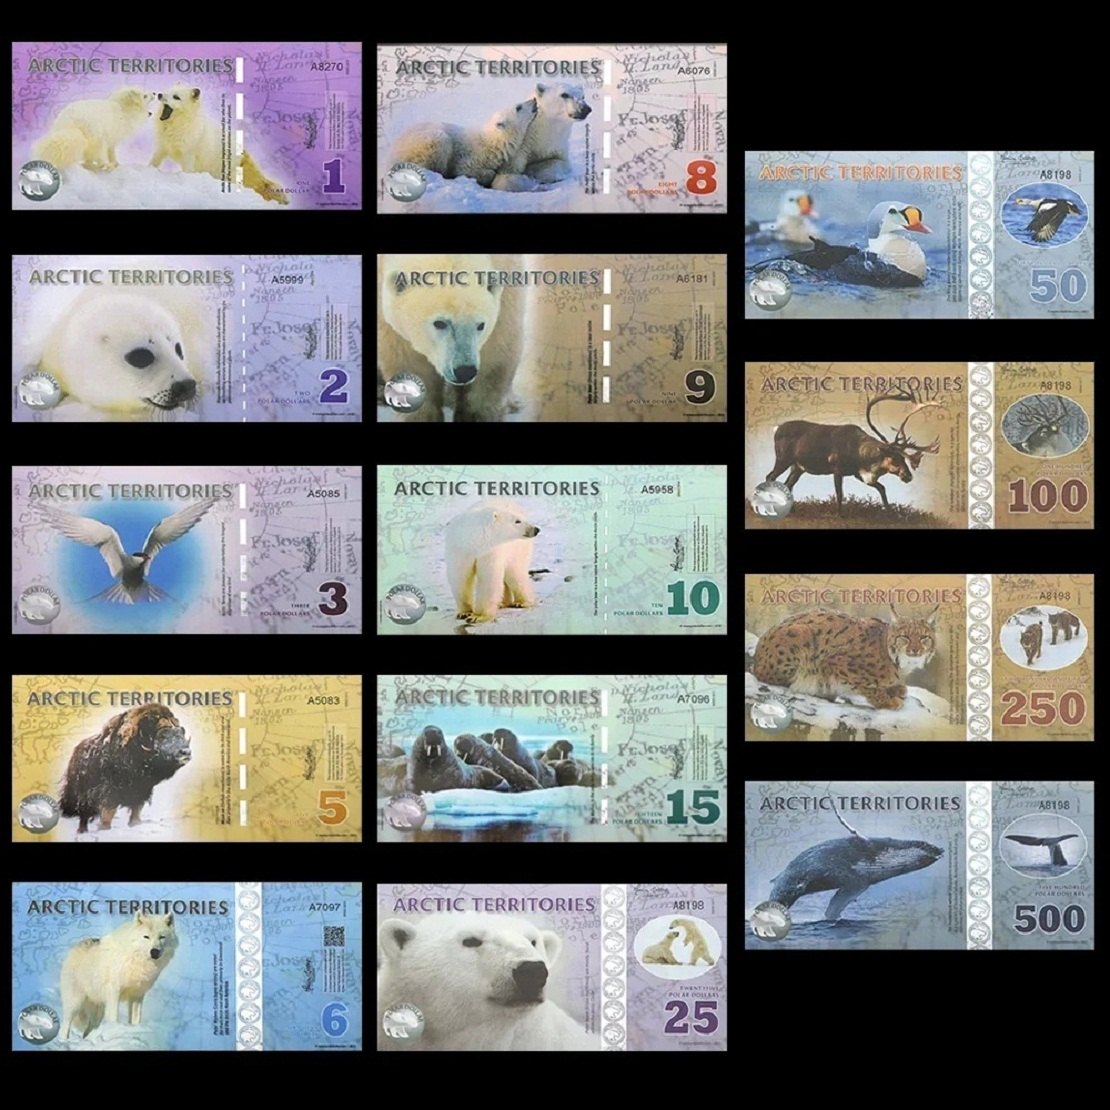  1-500 Dollar Polymer-Banknoten-Satz 14 Scheine Arktische Regionen für Sammler   